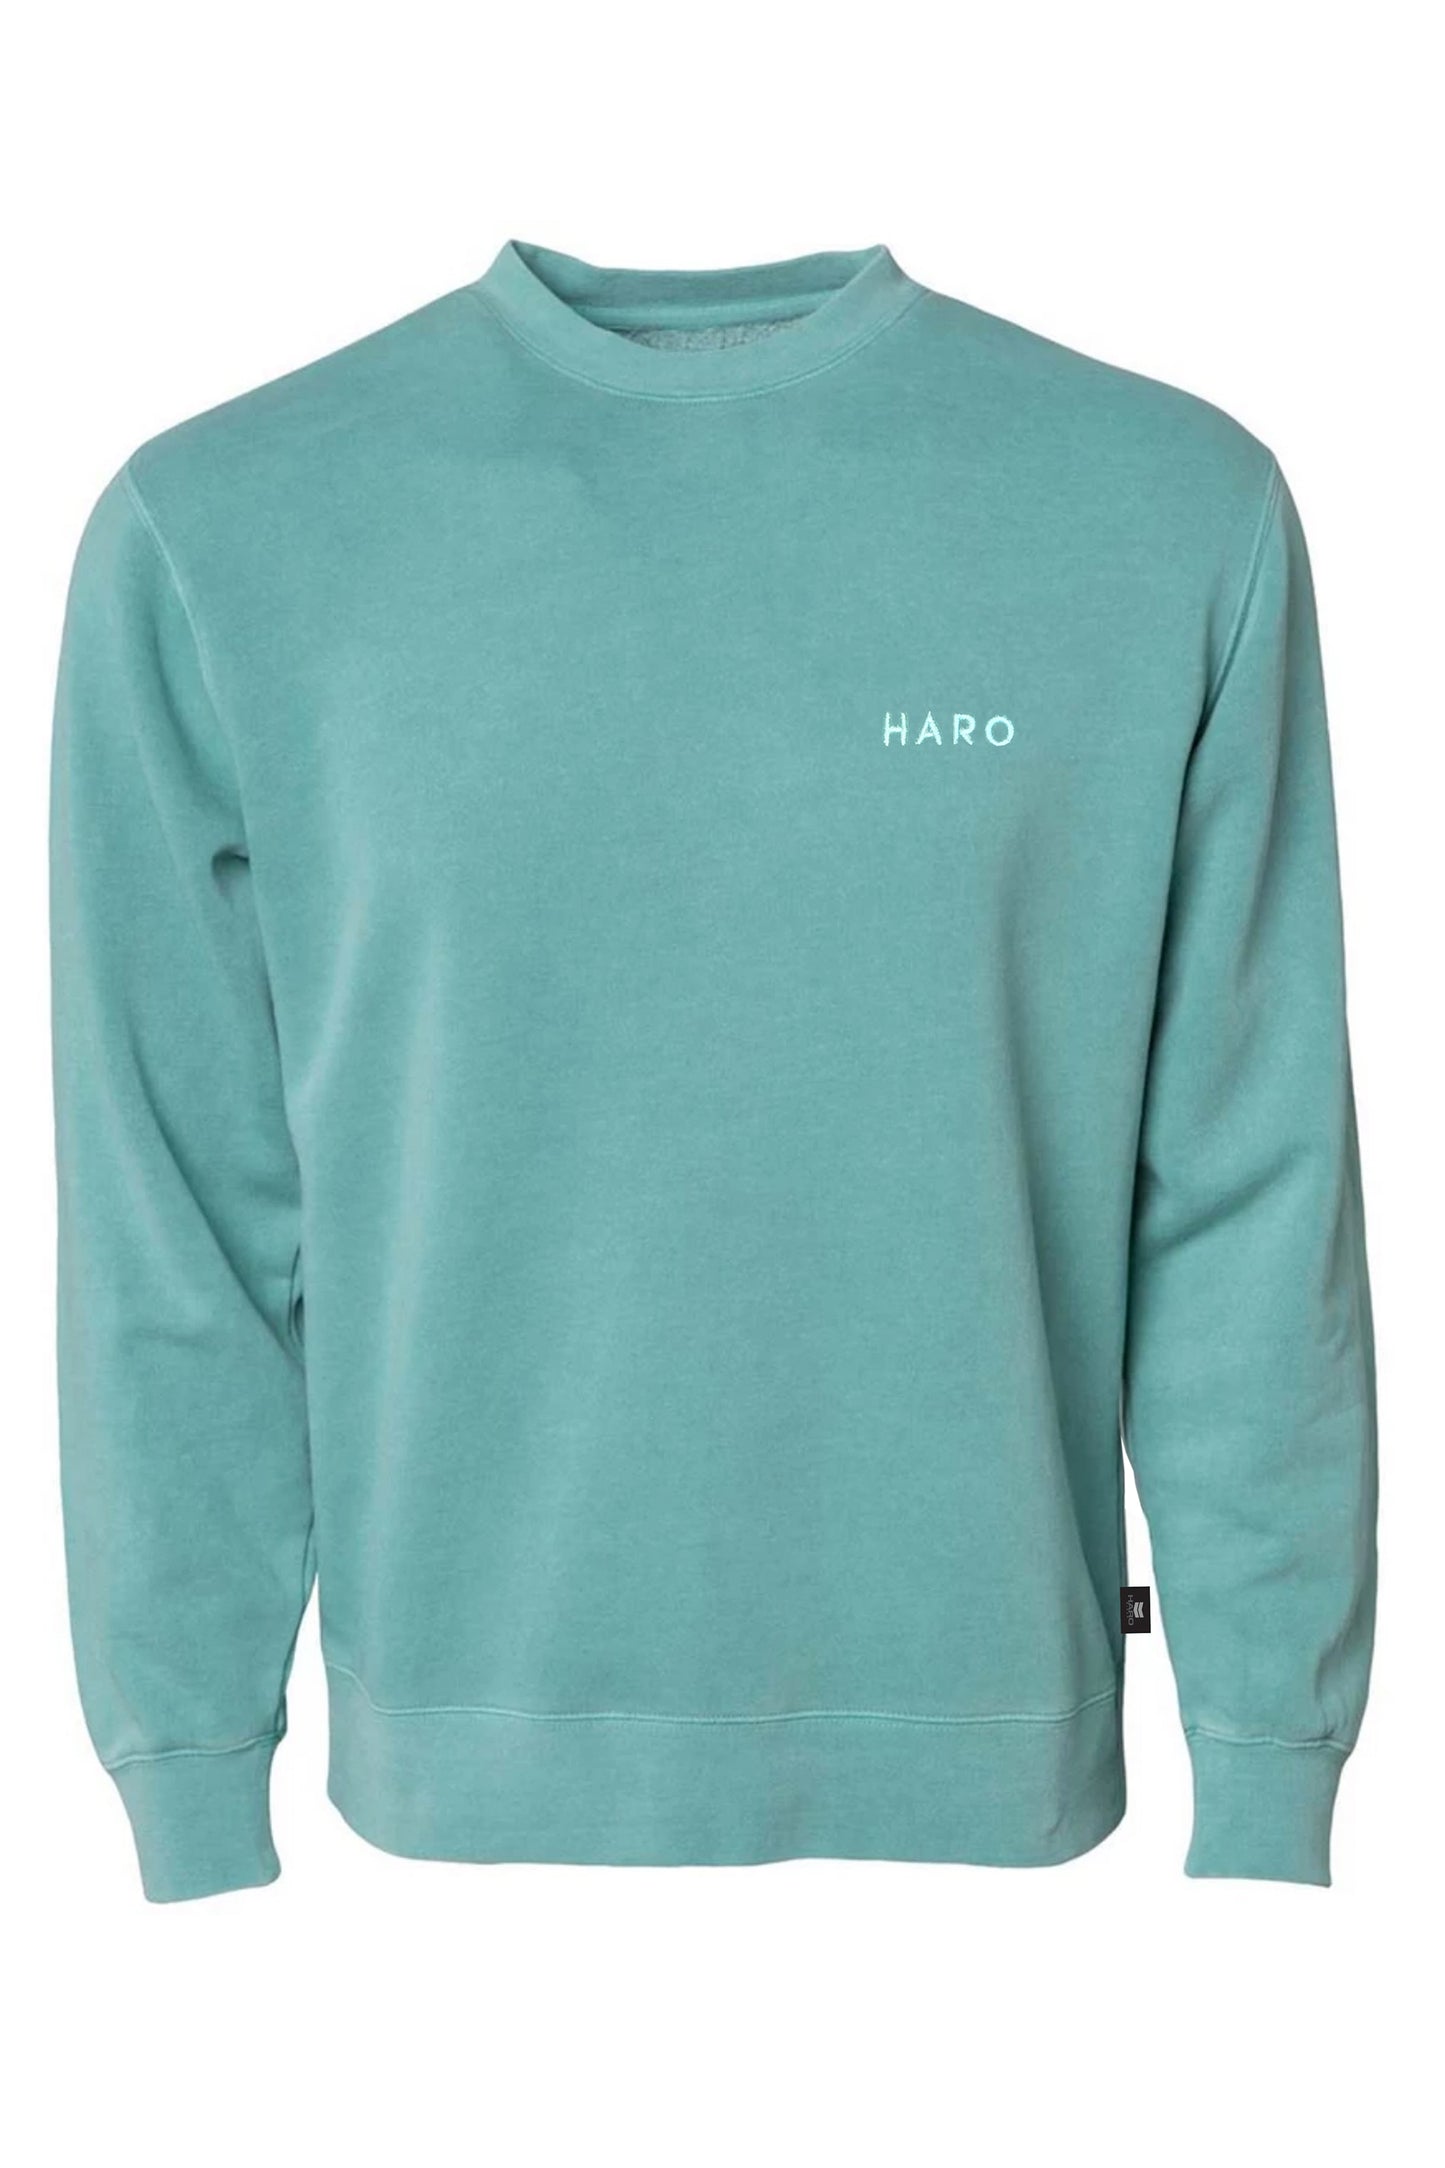 Haro Thinline Sweatshirt